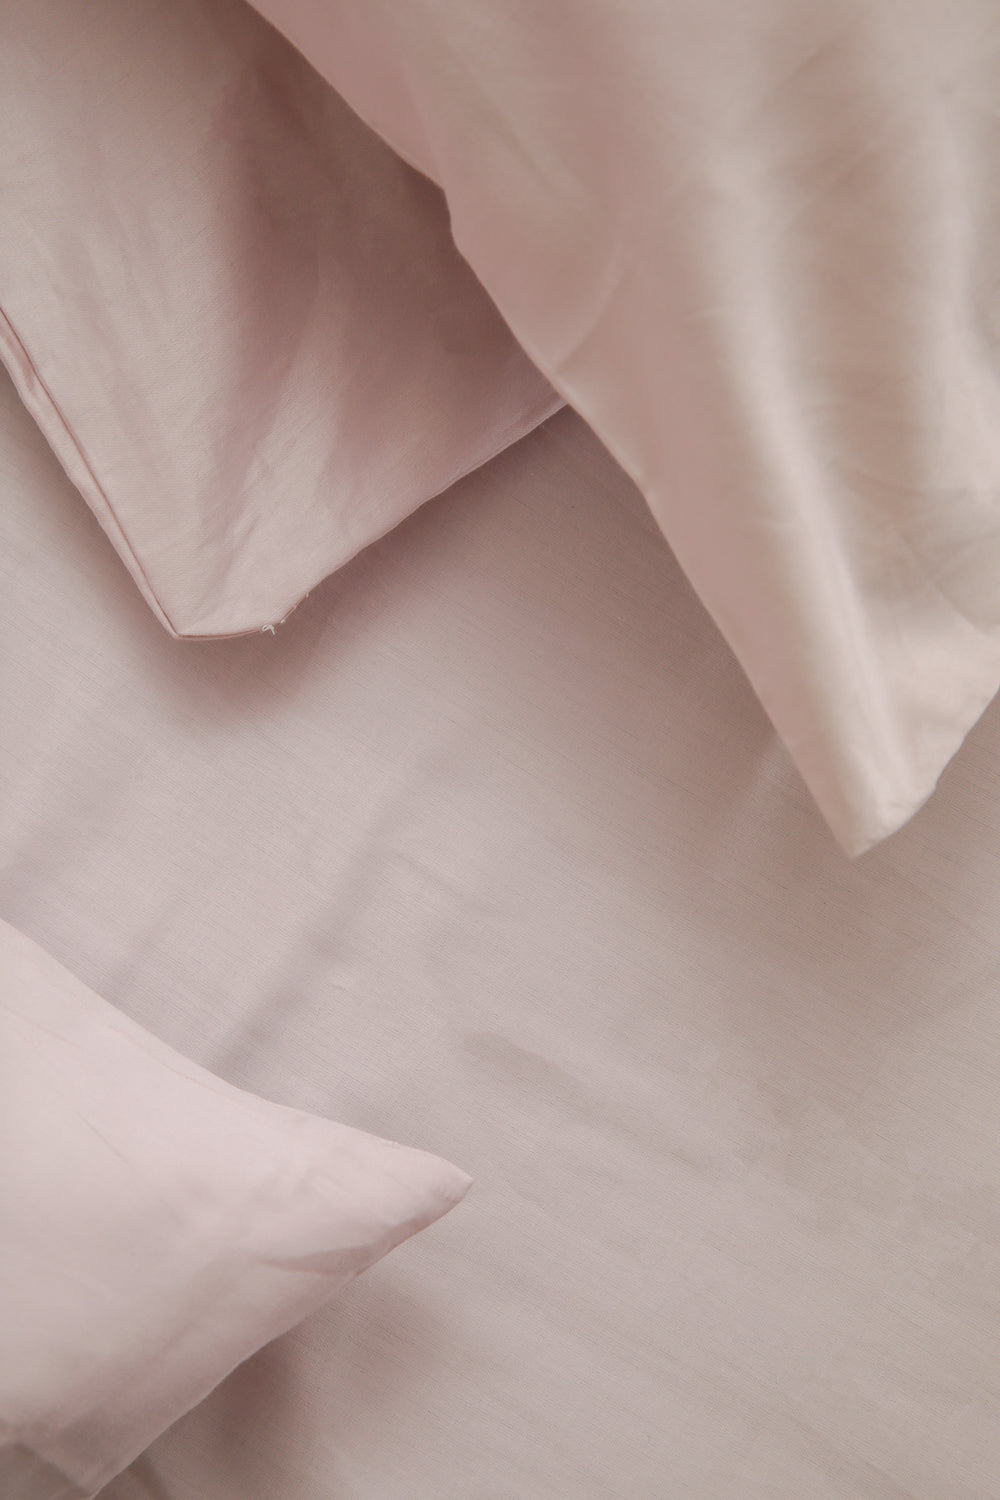 סדין מיטה זוגית 160/200 100% כותנה באריגת סאטן בצבע לילך